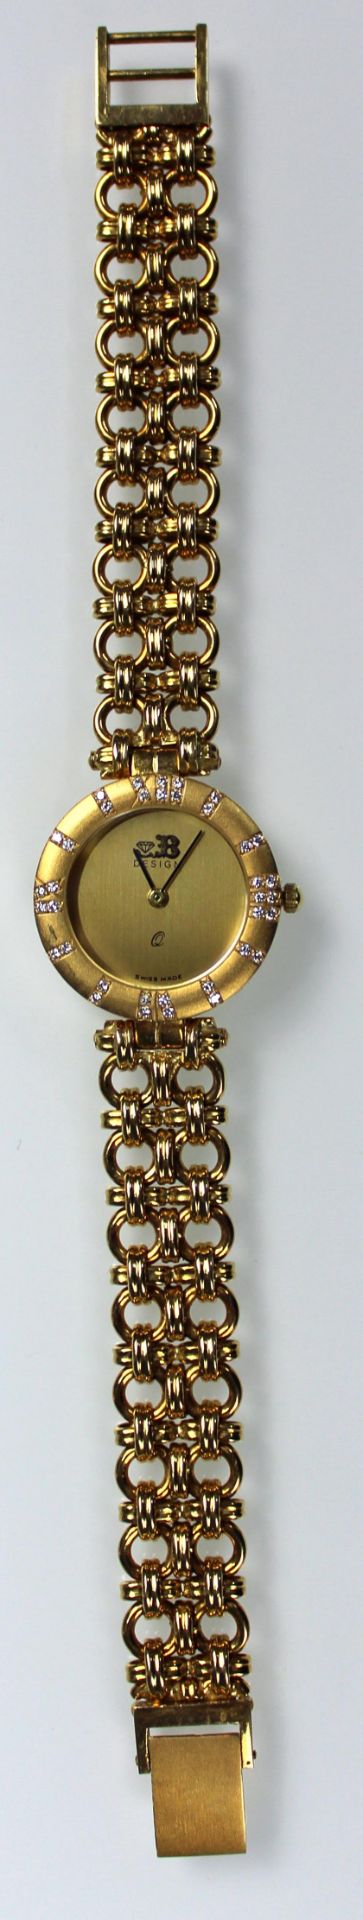 Schmuck Armbanduhr Gelb Gold 750, besetzt mit 36 kleinen Brillanten.58,5 Gramm Gesamtgewicht. - Bild 5 aus 11